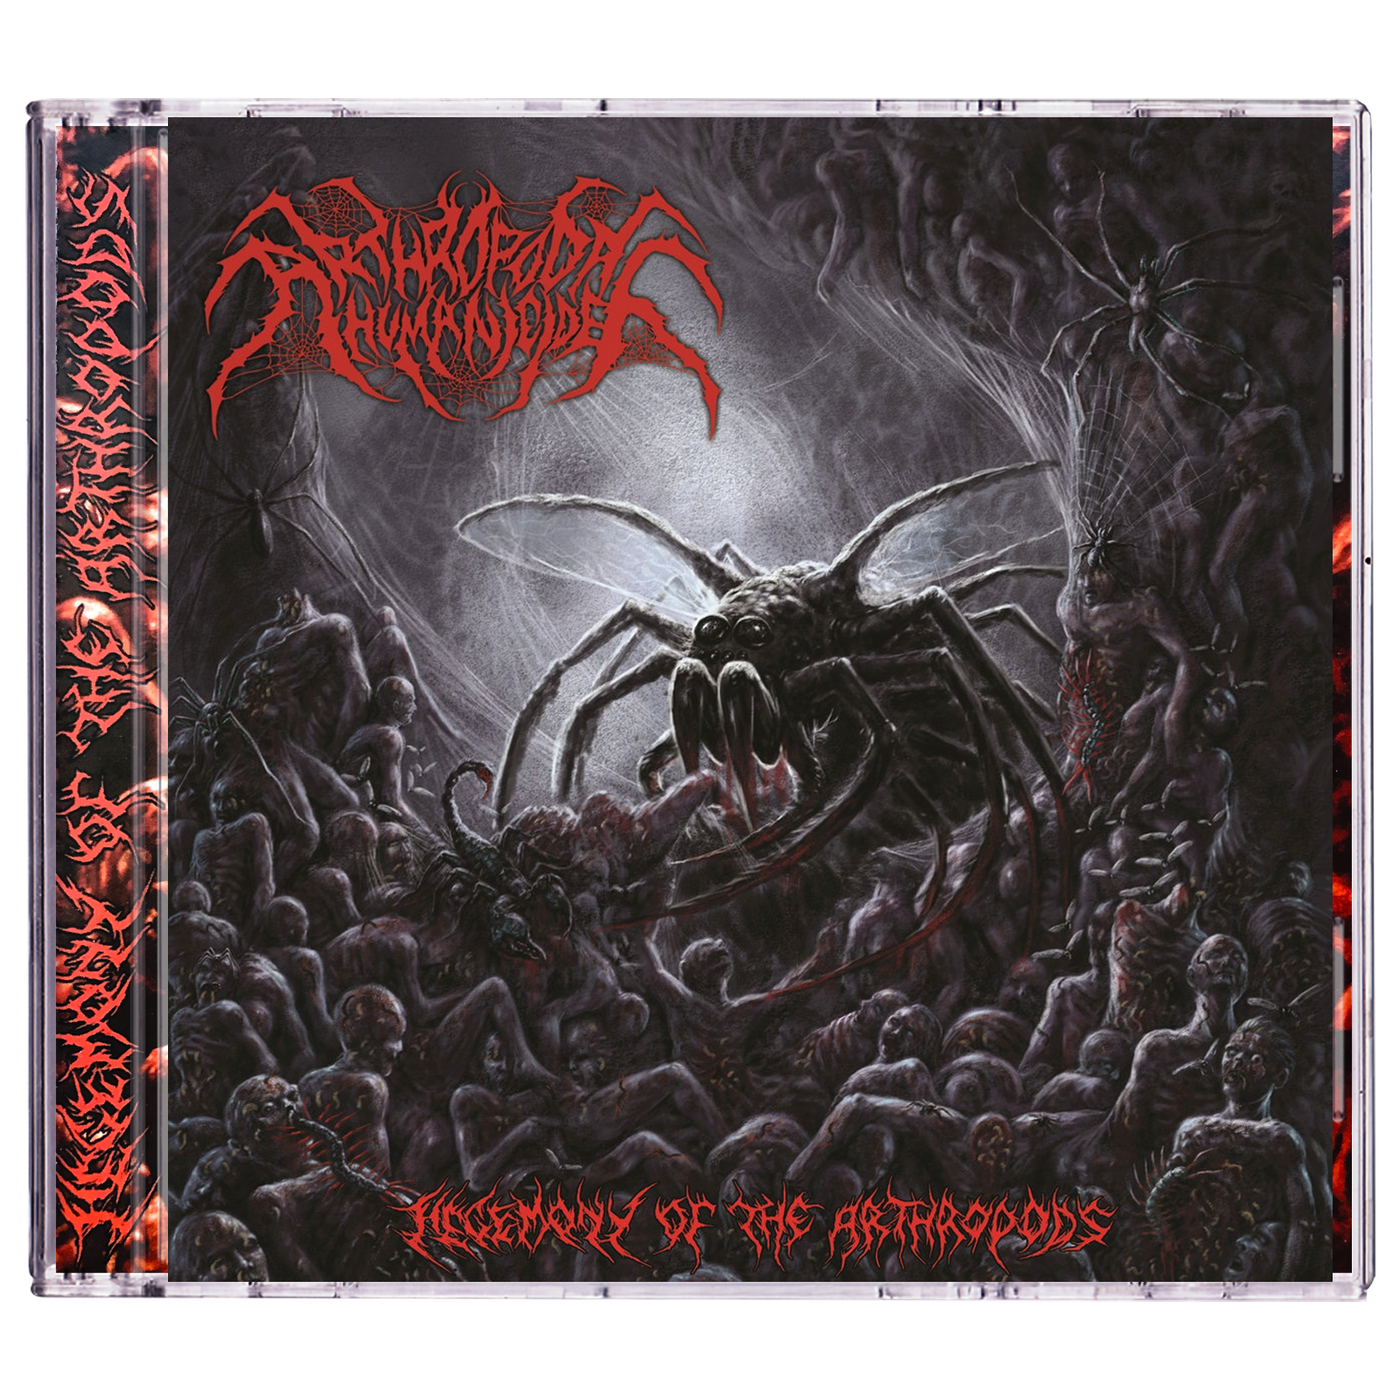 Arthropodal Humanicide 'Hegemony Of The Arthropods' CD